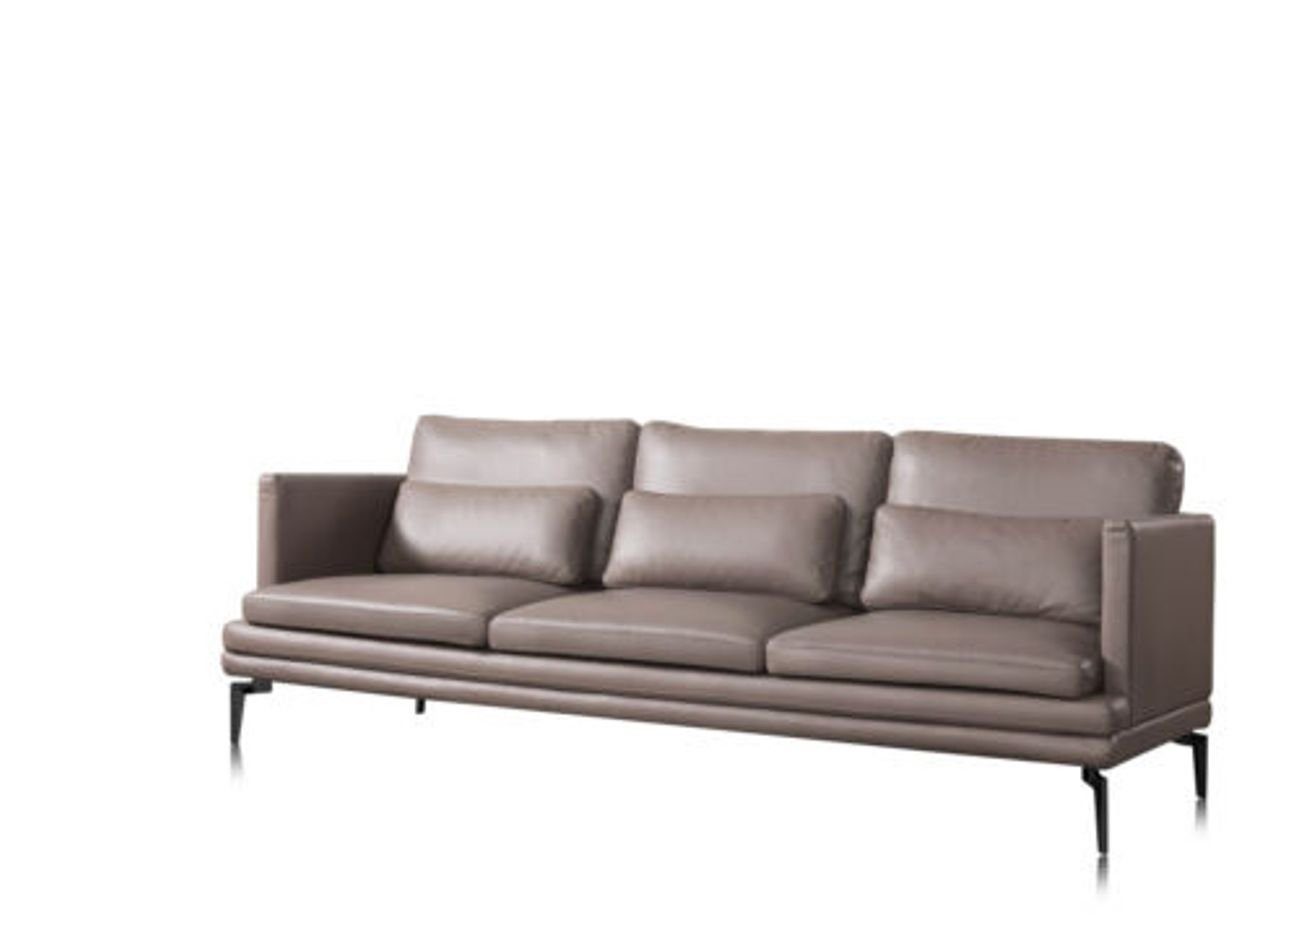 JVmoebel 3-Sitzer Sofa Dreisitzer Couch Polster Design mit Rückenkissen, Made in Europe